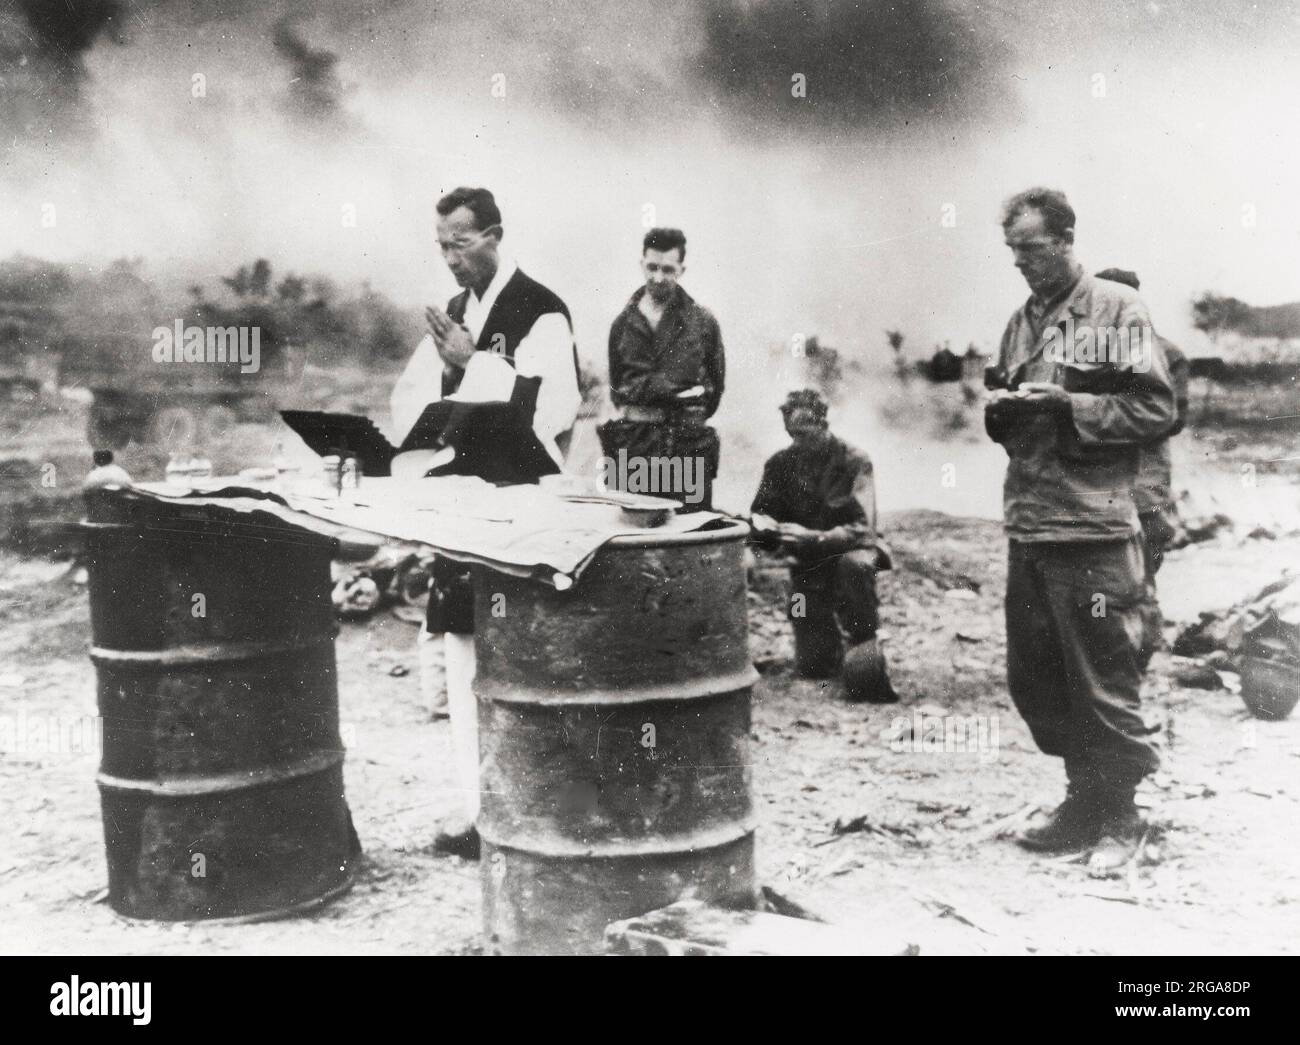 Vintage World war II Photograph - amerikanischer Kaplan führt Gebete für gefallene Soldaten auf der Insel Le Shima nach dem Sieg auf der Insel über die Japaner Stockfoto